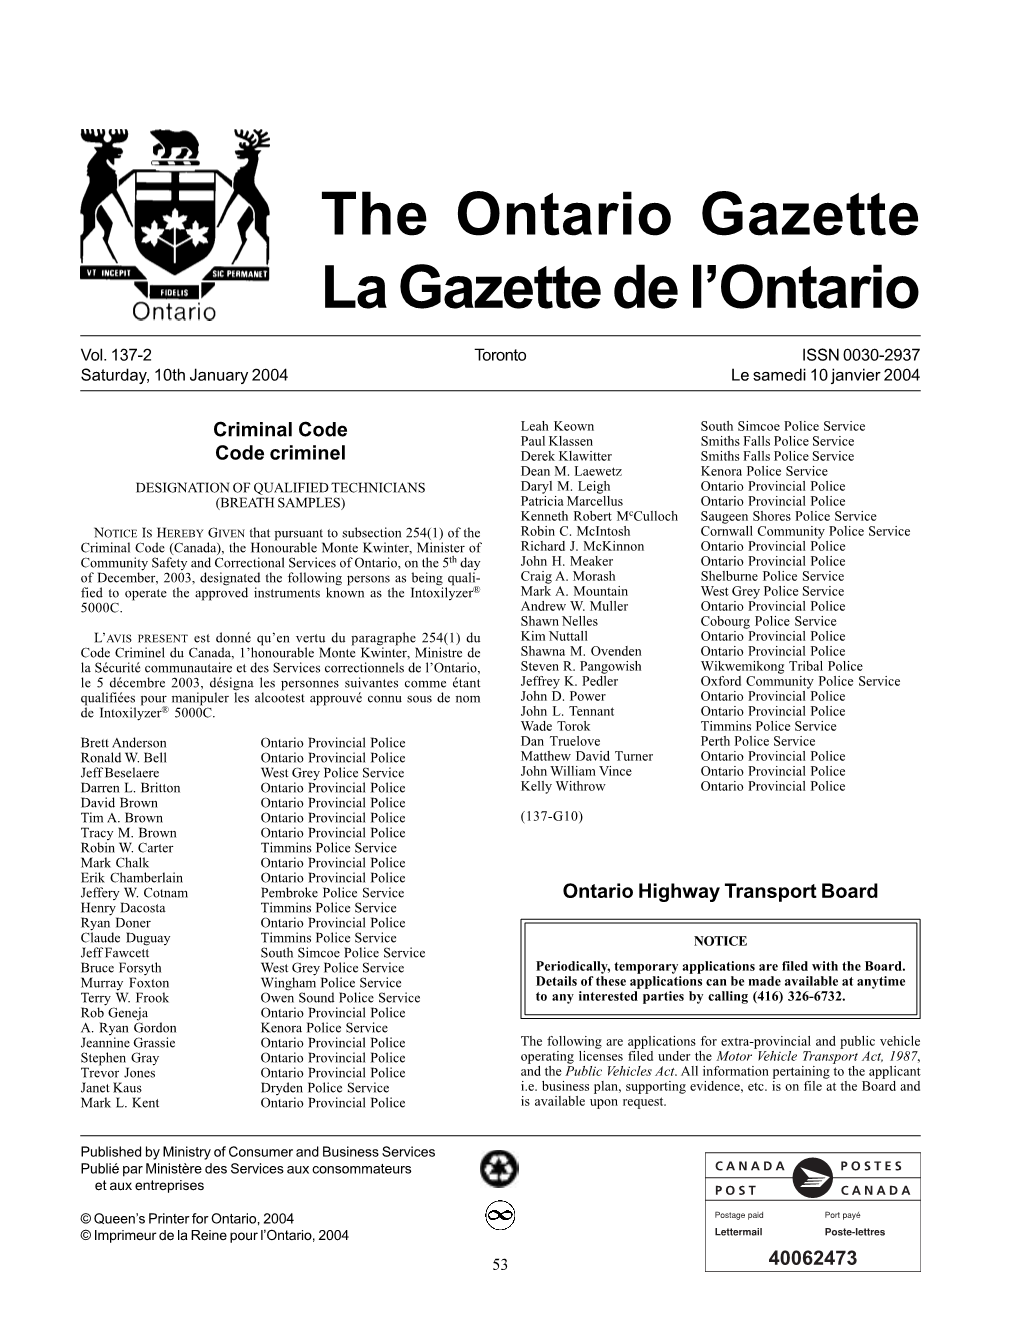 The Ontario Gazette La Gazette De L'ontario